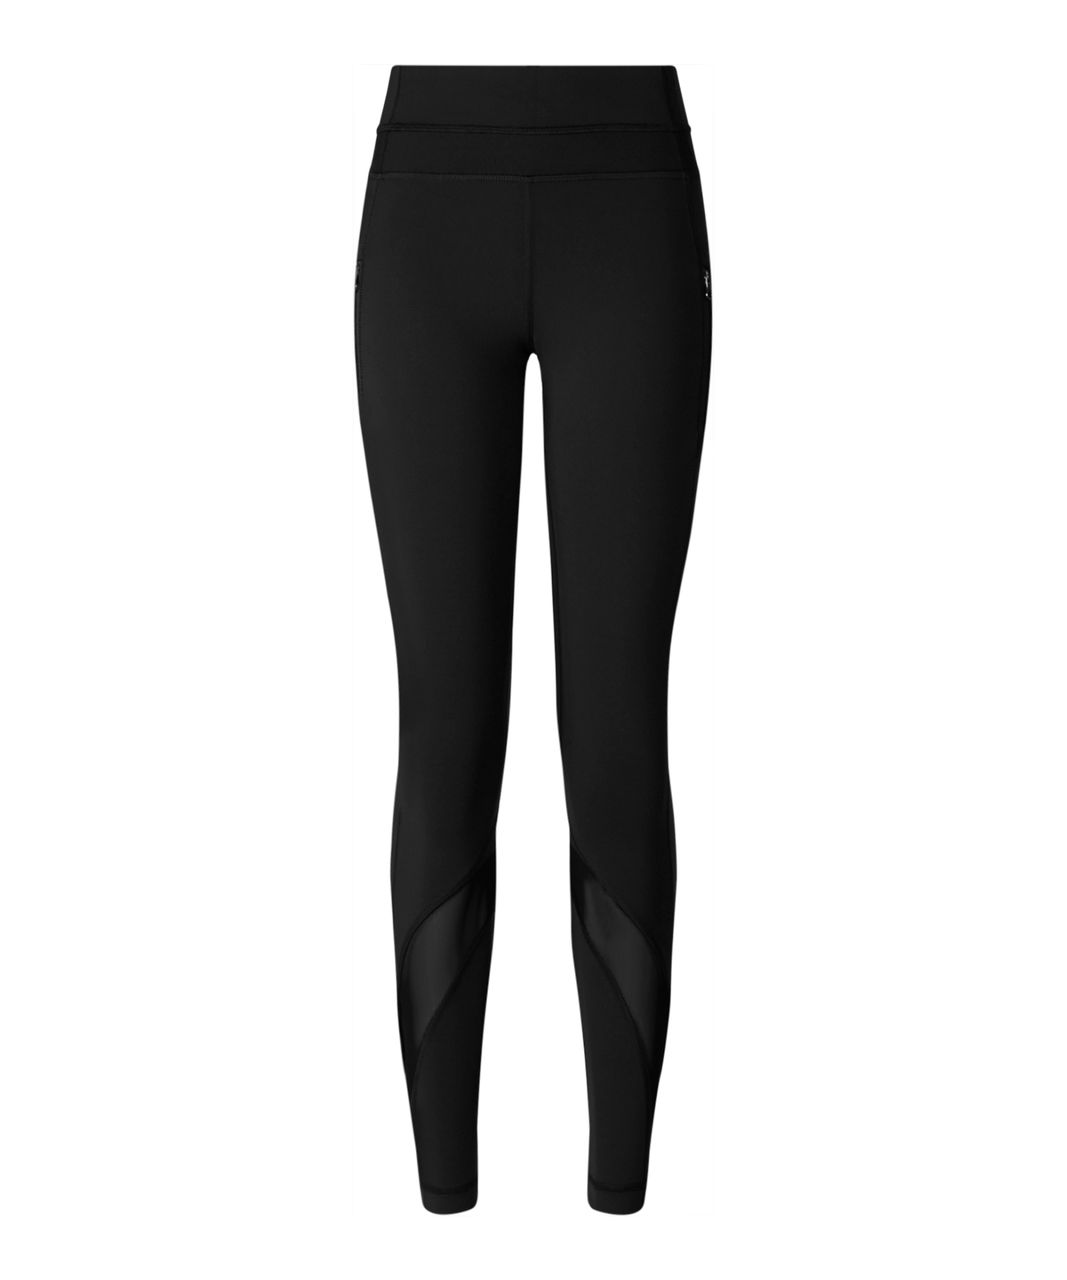 lululemon basic black leggings